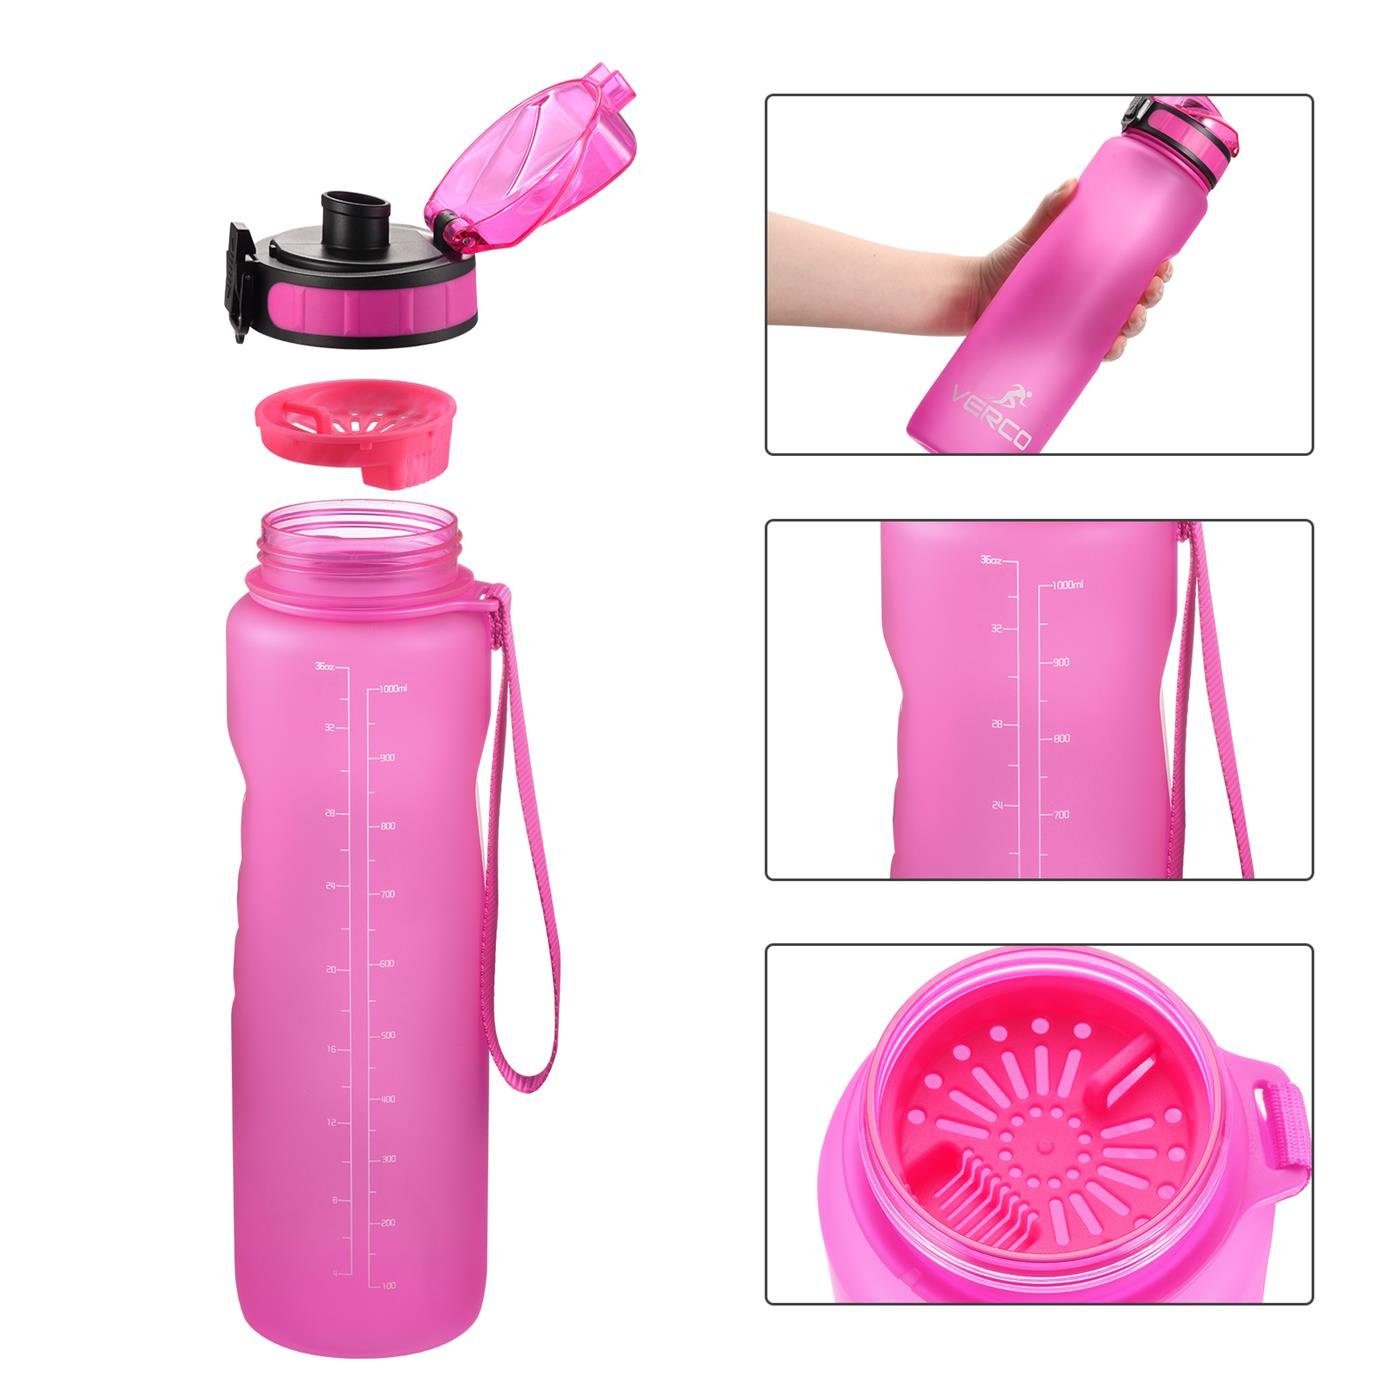 VERCO Trinkflasche 350 ml Fruchtsieb Liter Tritan Flasche, Sport Pink nachhaltig Frei wiederverwendbar 0,35 Wasserflasche mit BPA